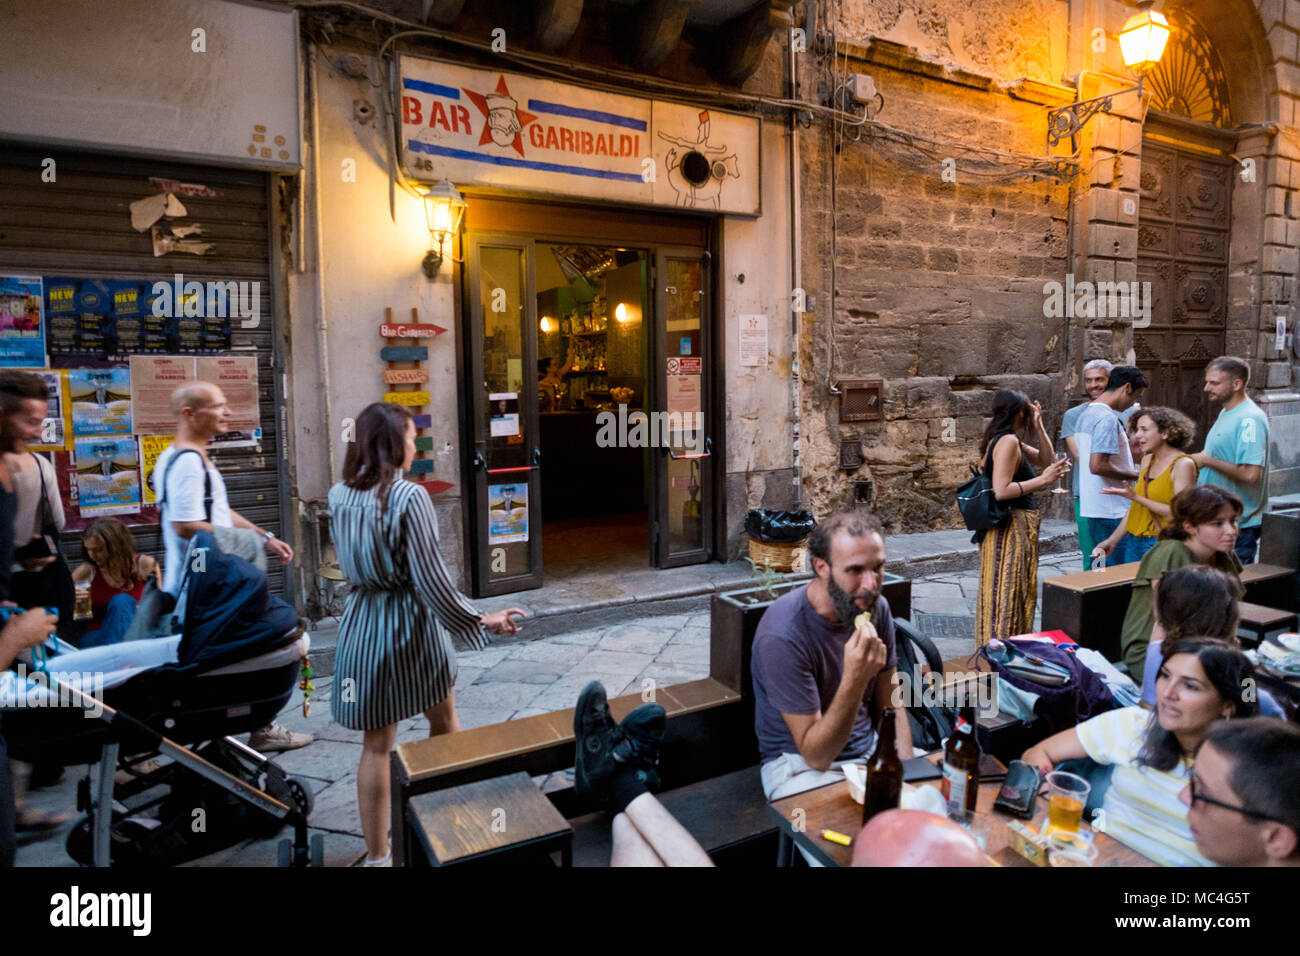 Aperitif time in Via Paternostro. The famous Garibaldi bar Stock Photo